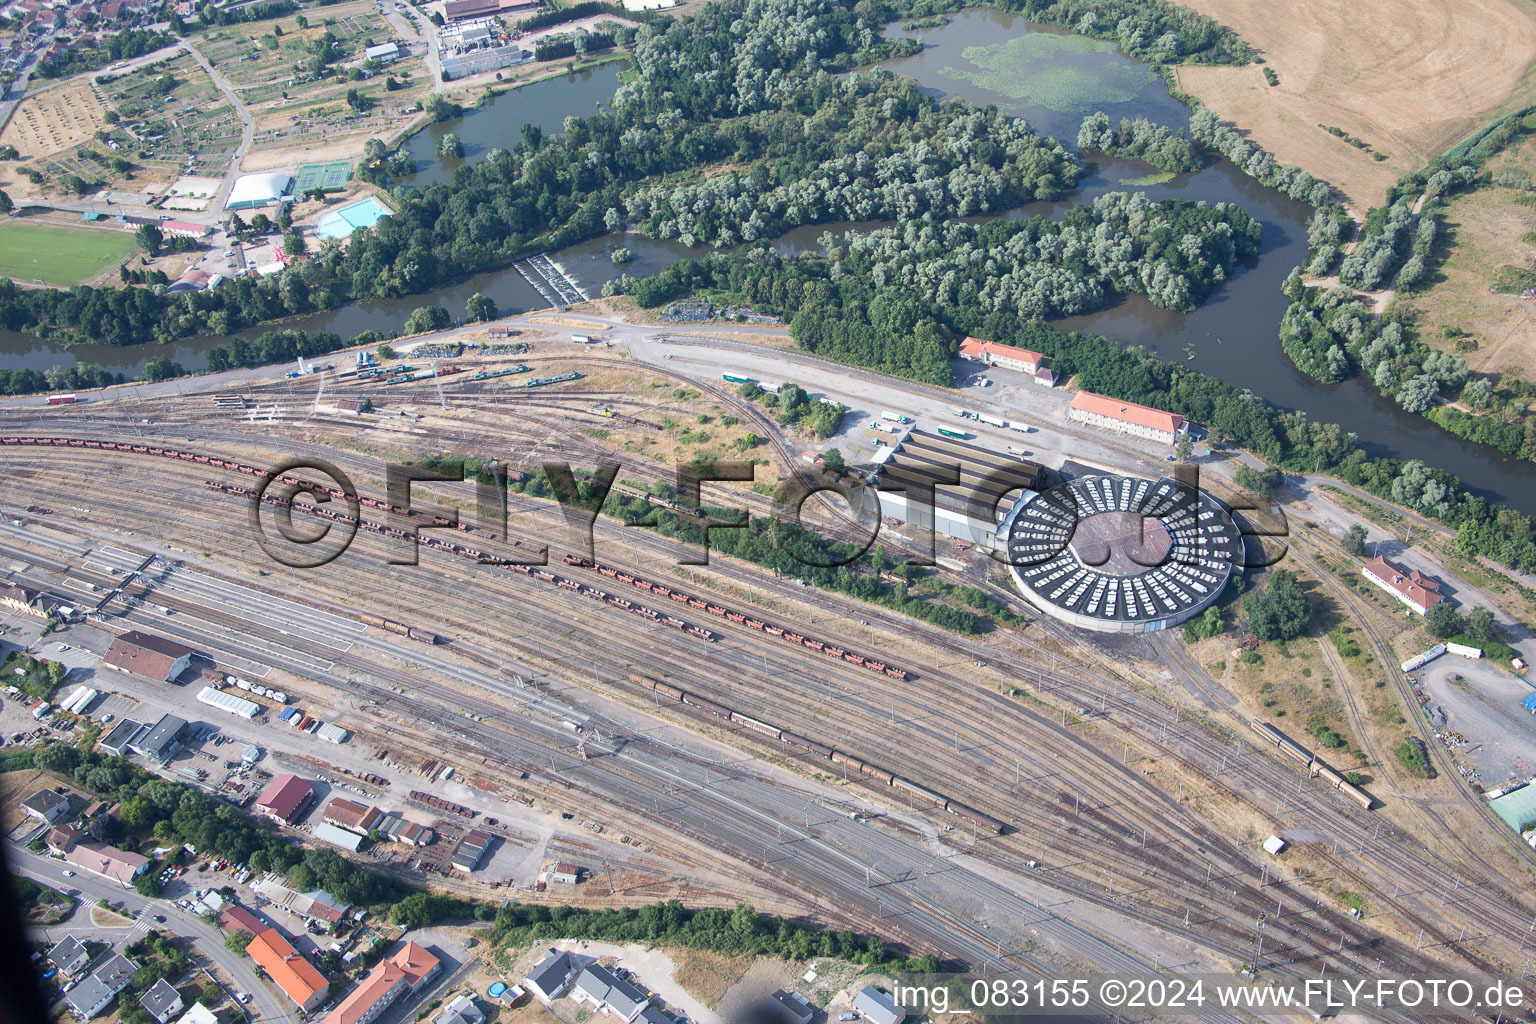 Luftbild von Bahnbetriebswerk und Ausbesserungswerk, Wartung und Instandhaltung von Zügen der SNCF in Damelevières in Grand Est im Bundesland Meurthe-et-Moselle, Frankreich